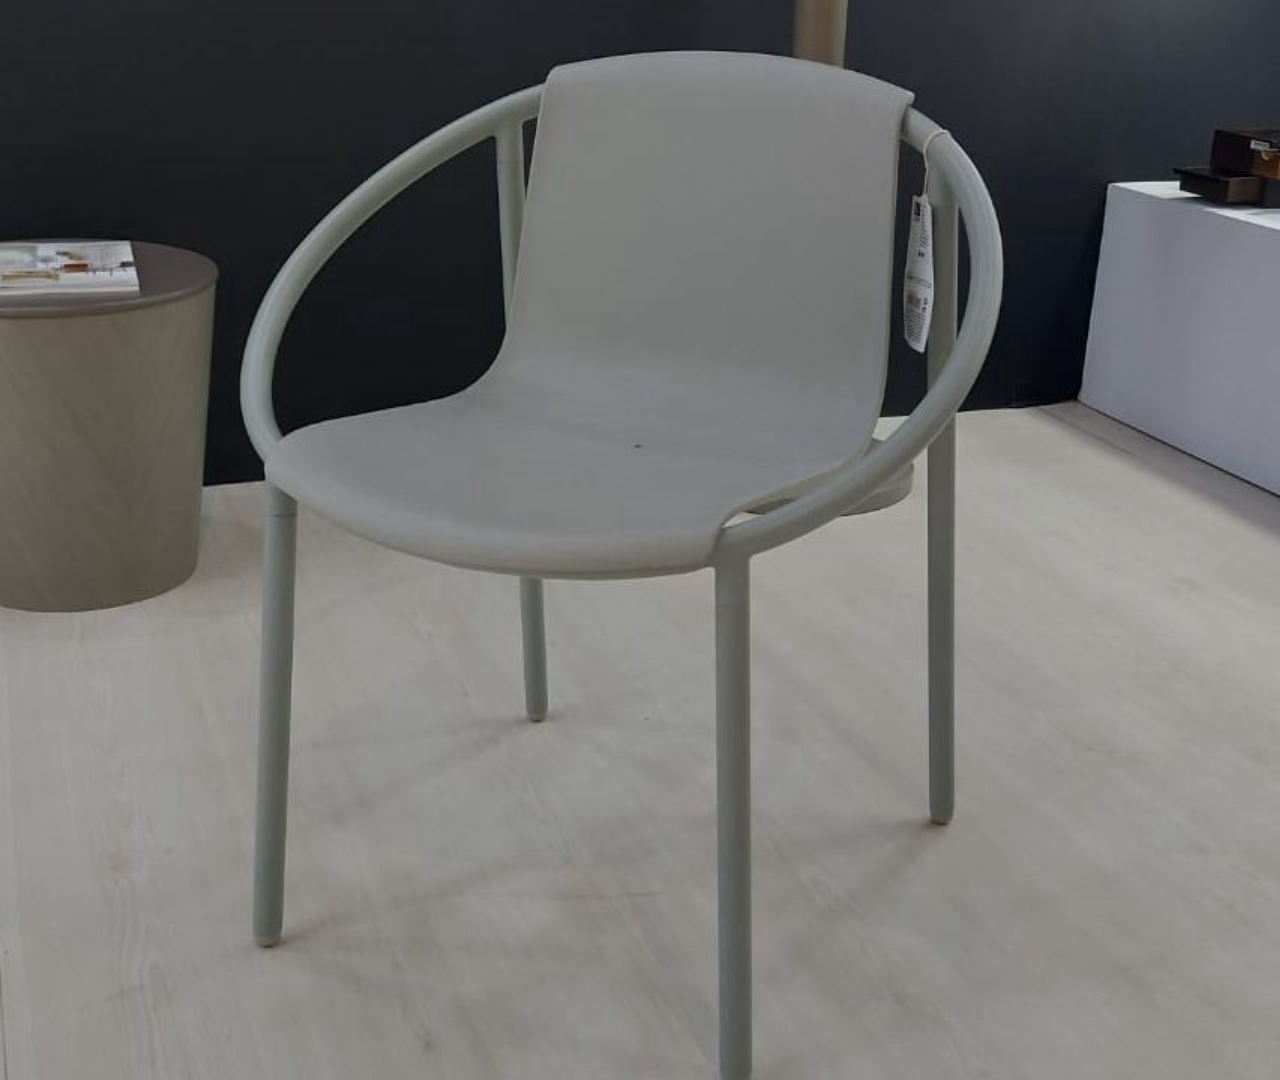 Ringo Chair, por Kutarq Studio, S.L, marca a entrada da marca de acessórios Umbra no mercado de mobiliário.  